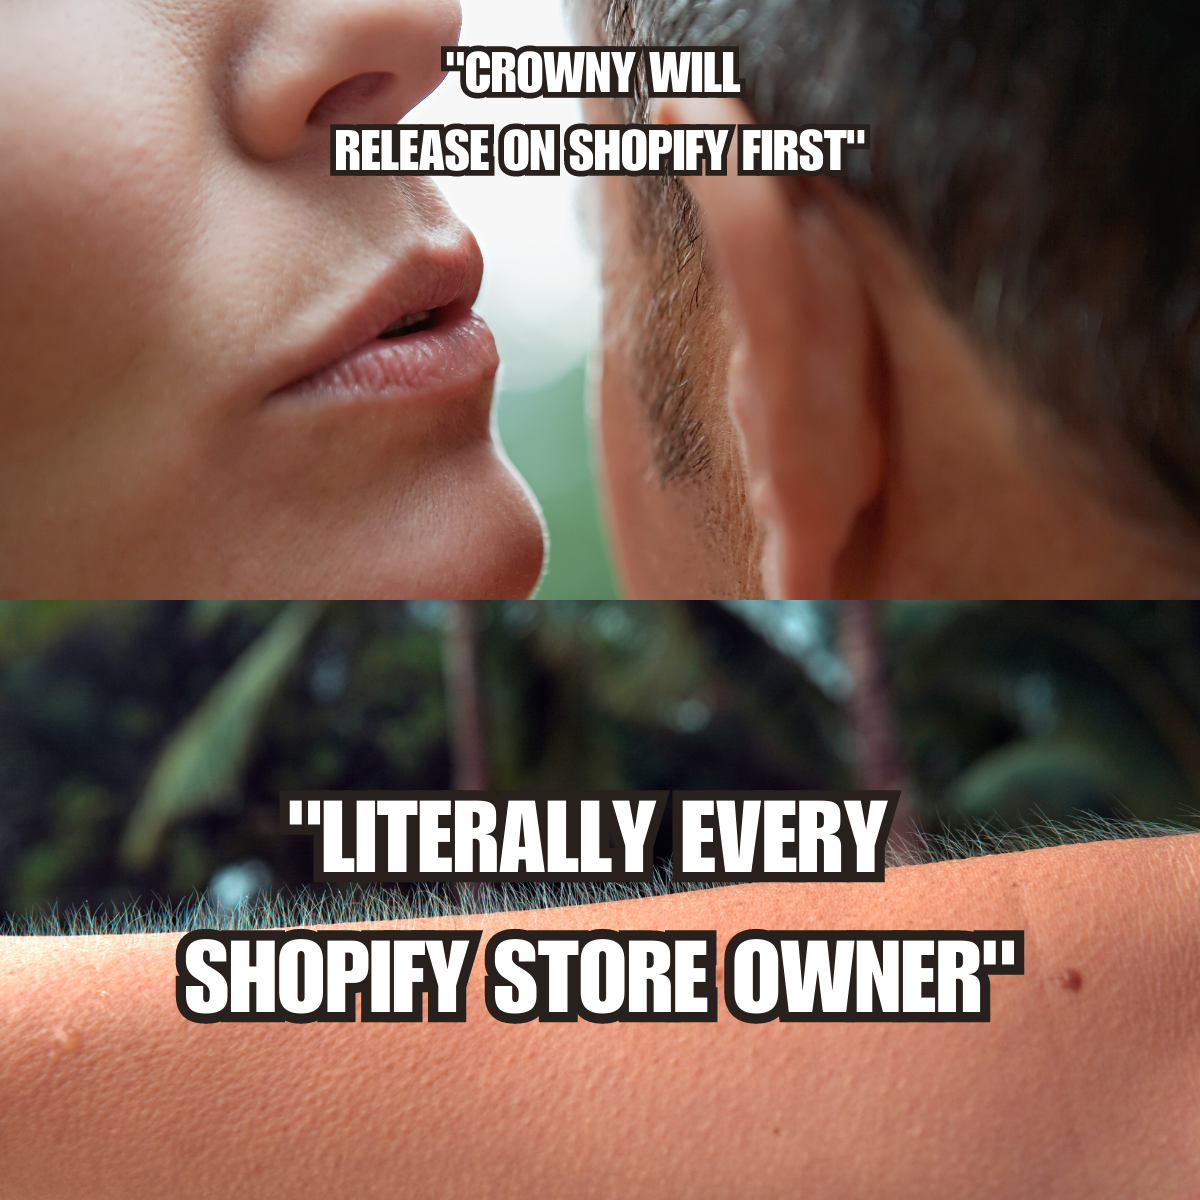 crowny lanceert eerst op shopify meme (EN)